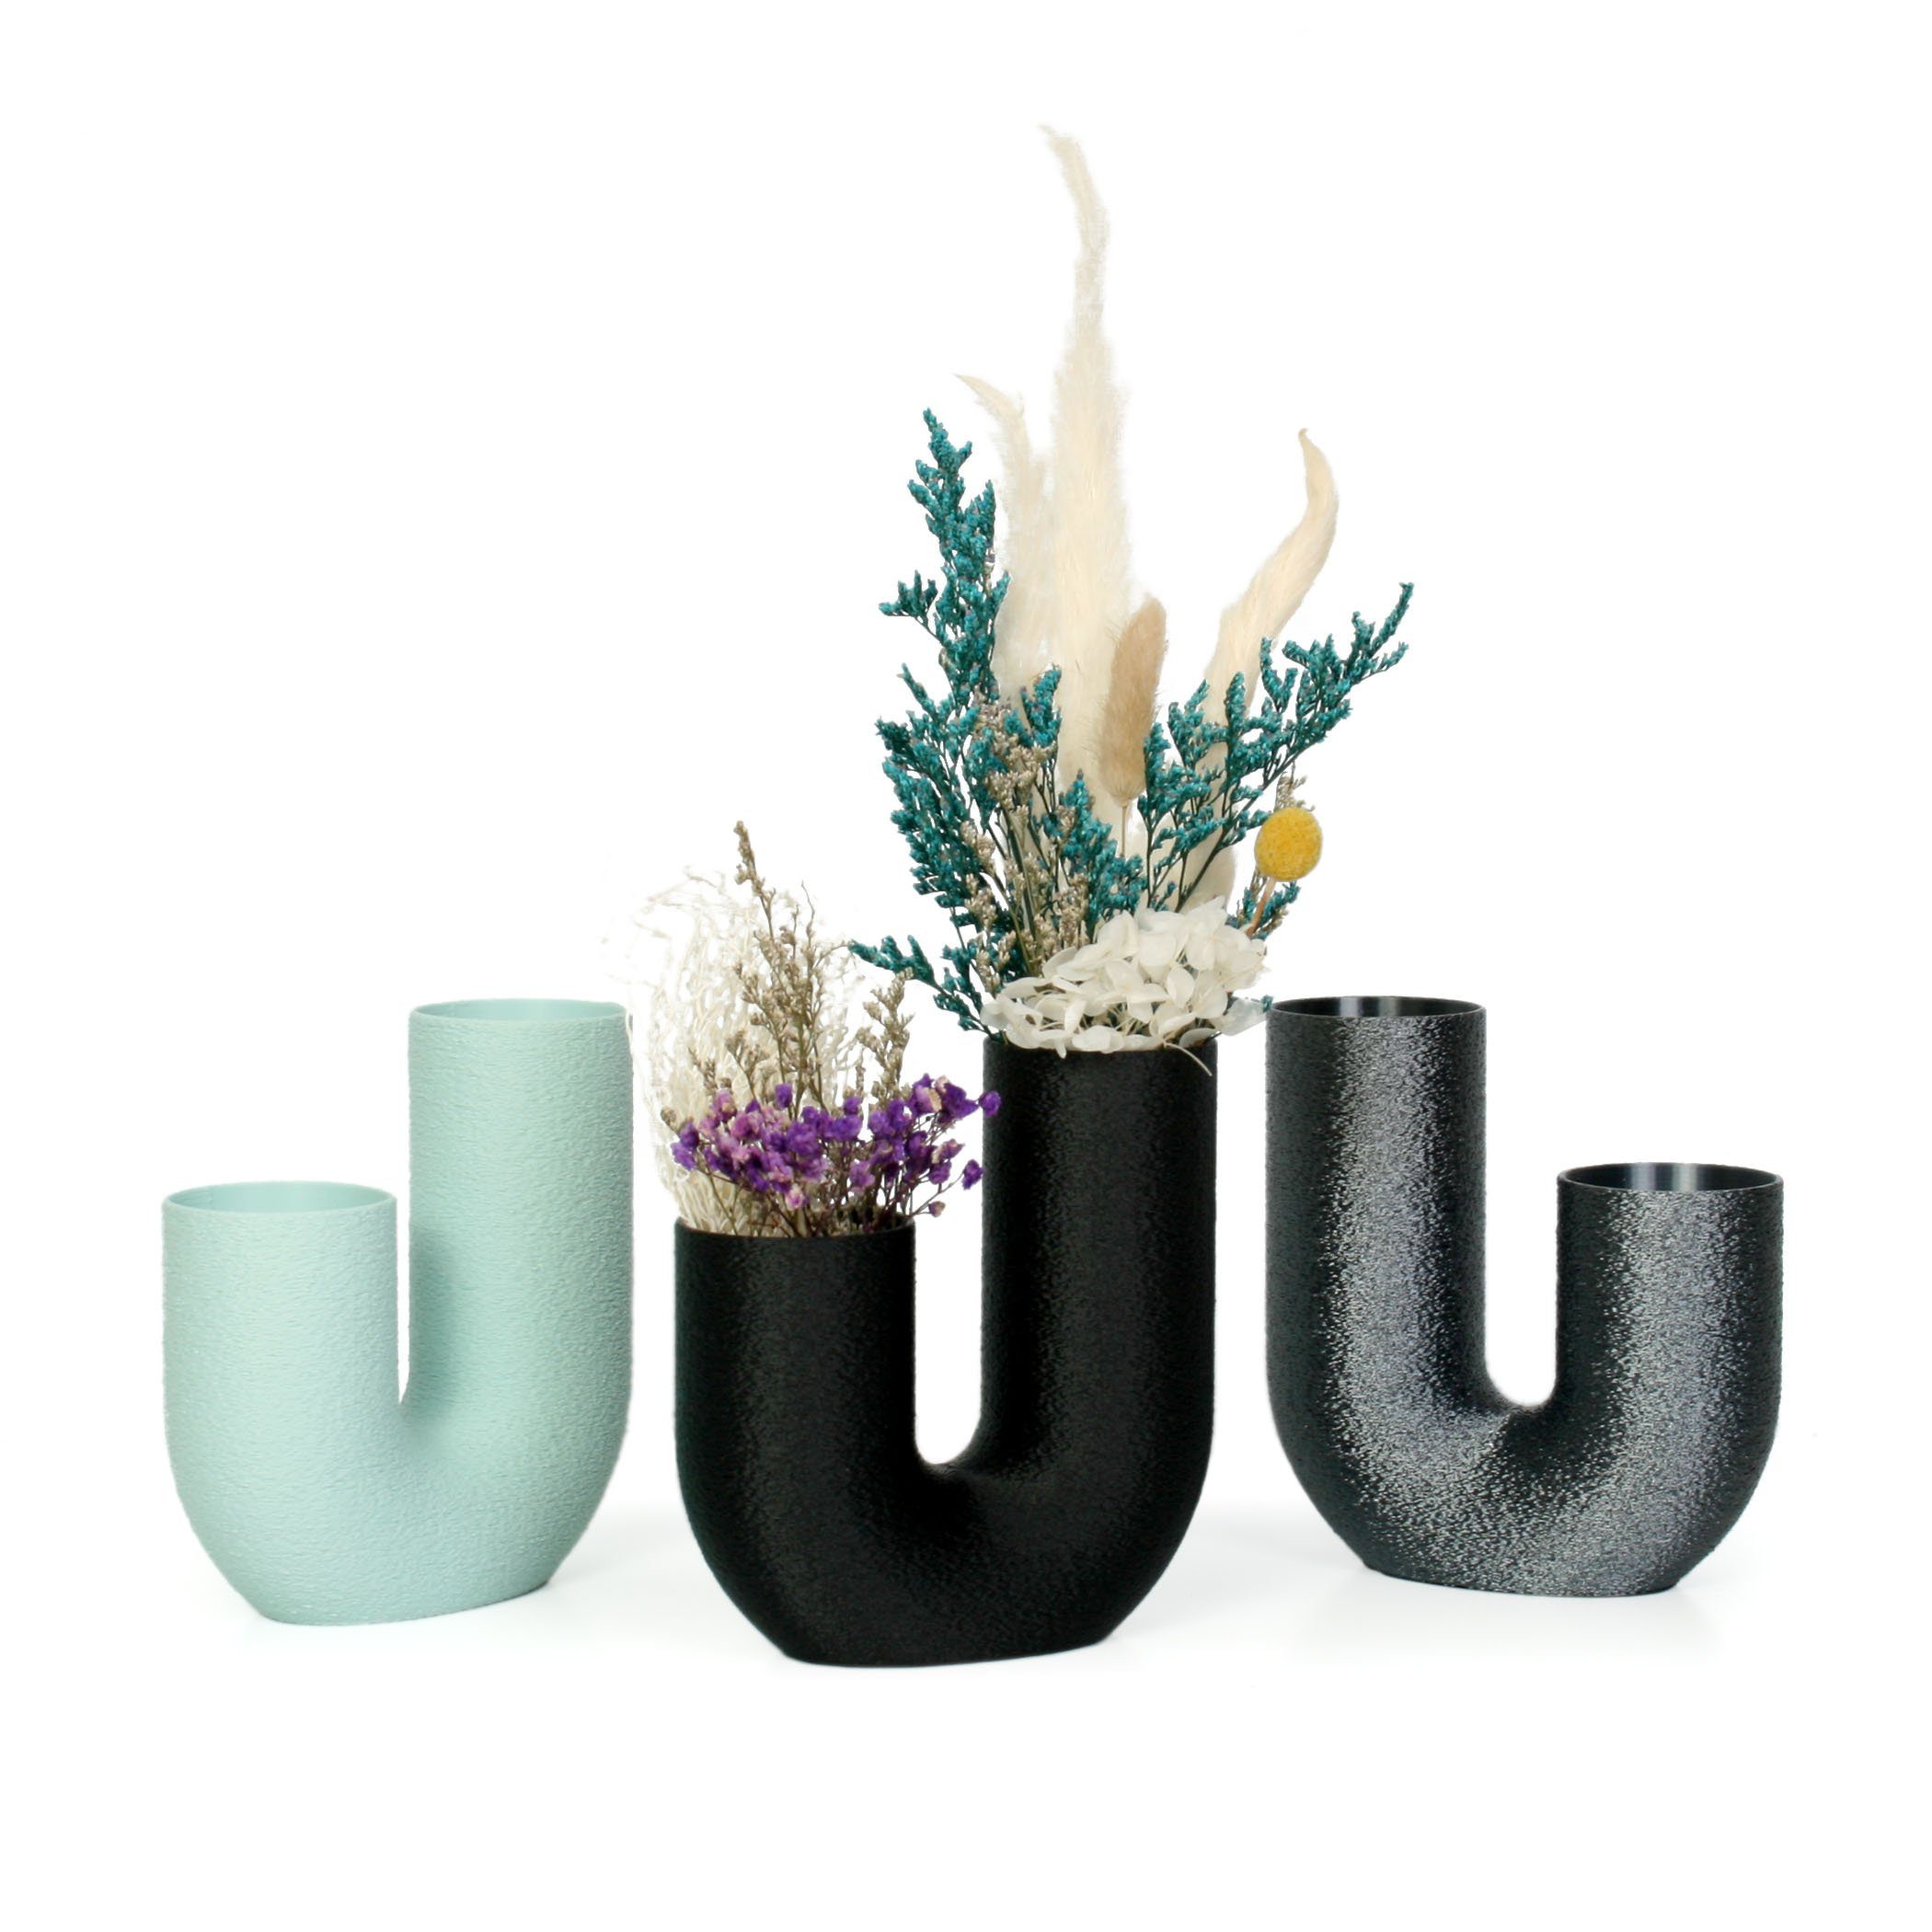 Kreative Feder Dekovase Designer Vase nachwachsenden Rohstoffen; aus Bronze bruchsicher wasserdicht & aus Bio-Kunststoff, – Blumenvase Dekorative